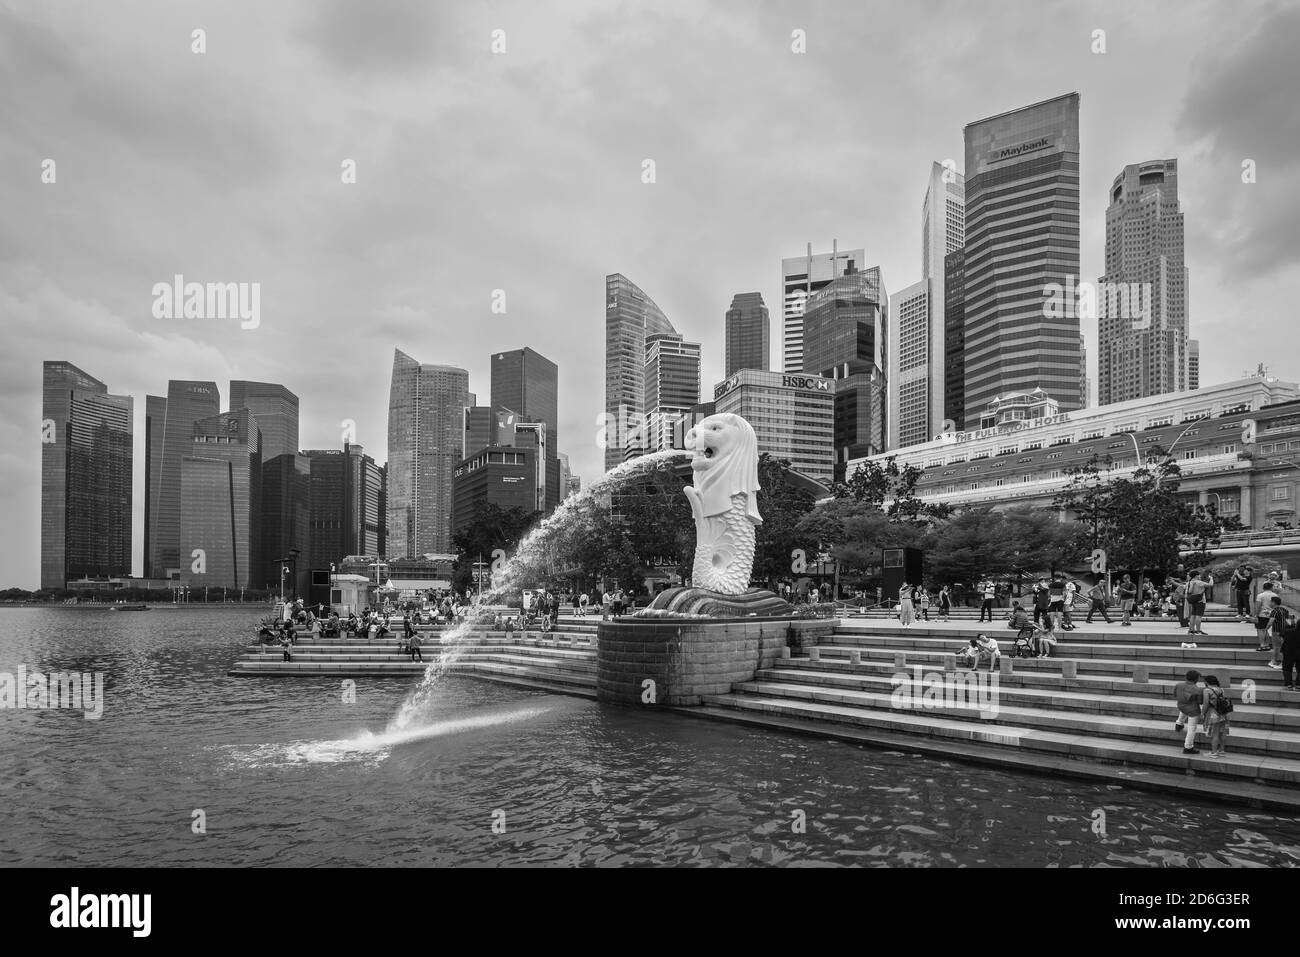 Singapour - 3 décembre 2019 : fontaine de la statue de Merlion dans la ville de Merlion Park à Singapour. Merlion Fountain est l'une des attractions touristiques les plus célèbres de Banque D'Images